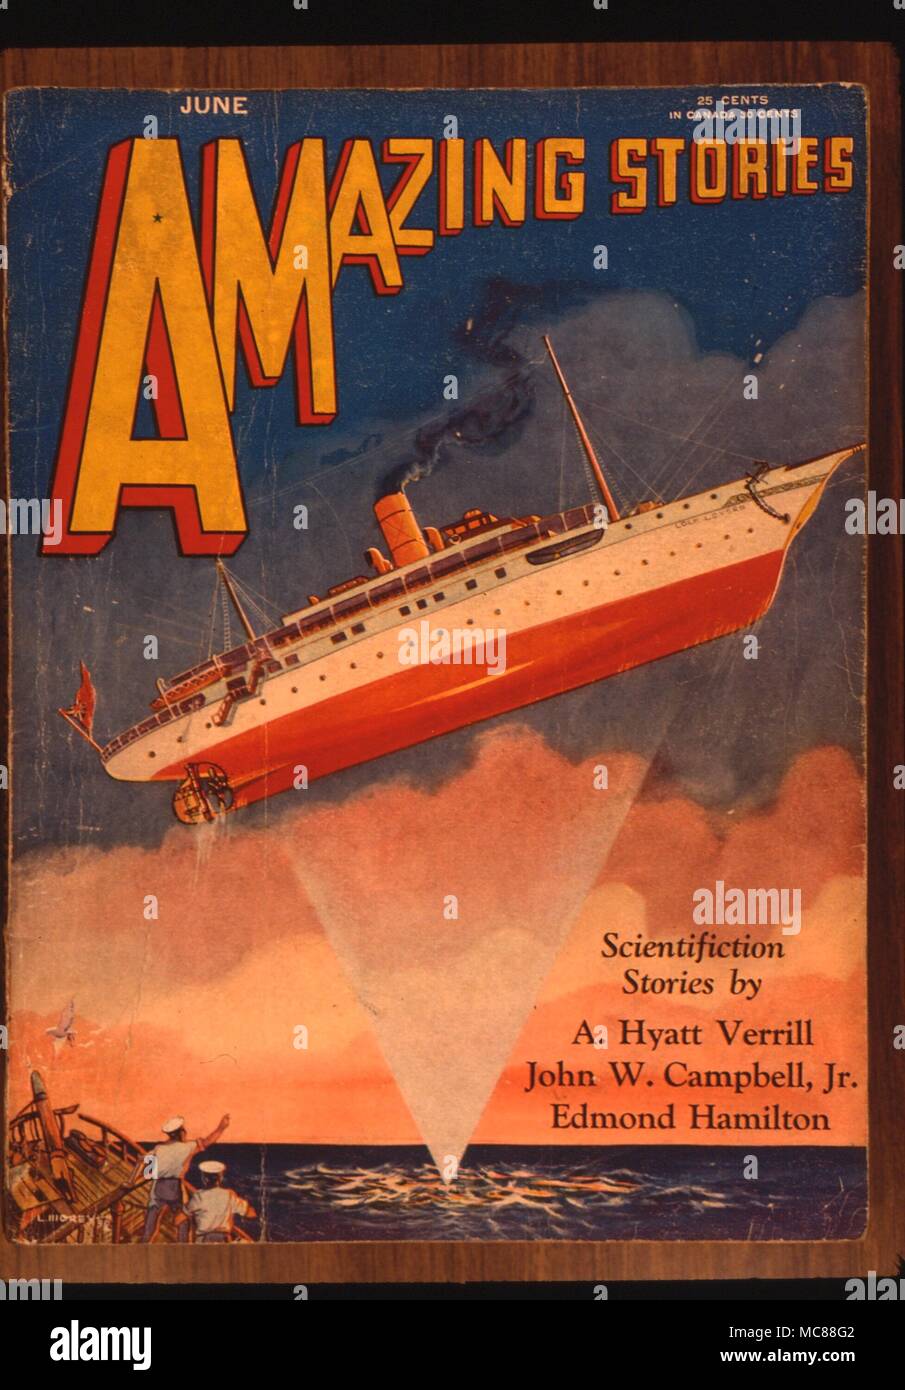 Phénomènes étranges 'Amazing Stories' veste. Juin 1930. Illustration pour 'Non-Gravitational' par Hyatt Vervill Vortex Banque D'Images